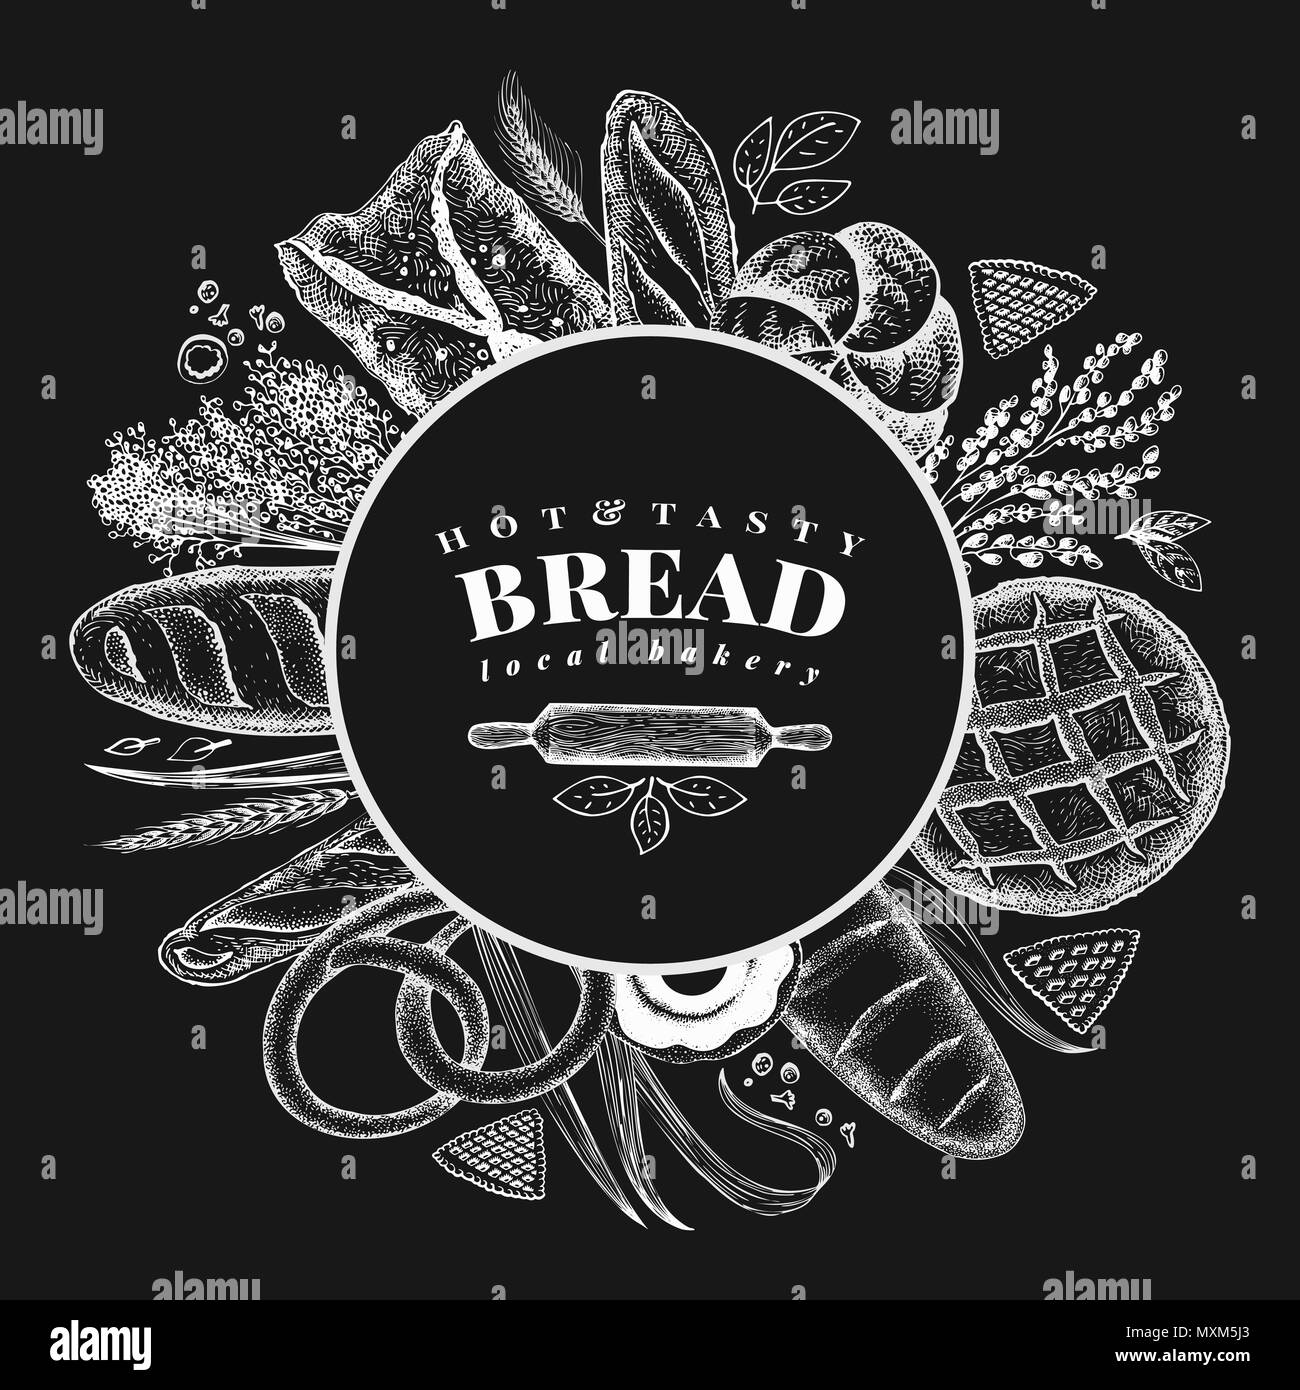 Vektor Bäckerei handgezeichnete Abbildung auf der Kreidetafel. Hintergrund mit Brot und Gebäck. Retro Design vorlage. Für Menü, Verpackung. Stock Vektor